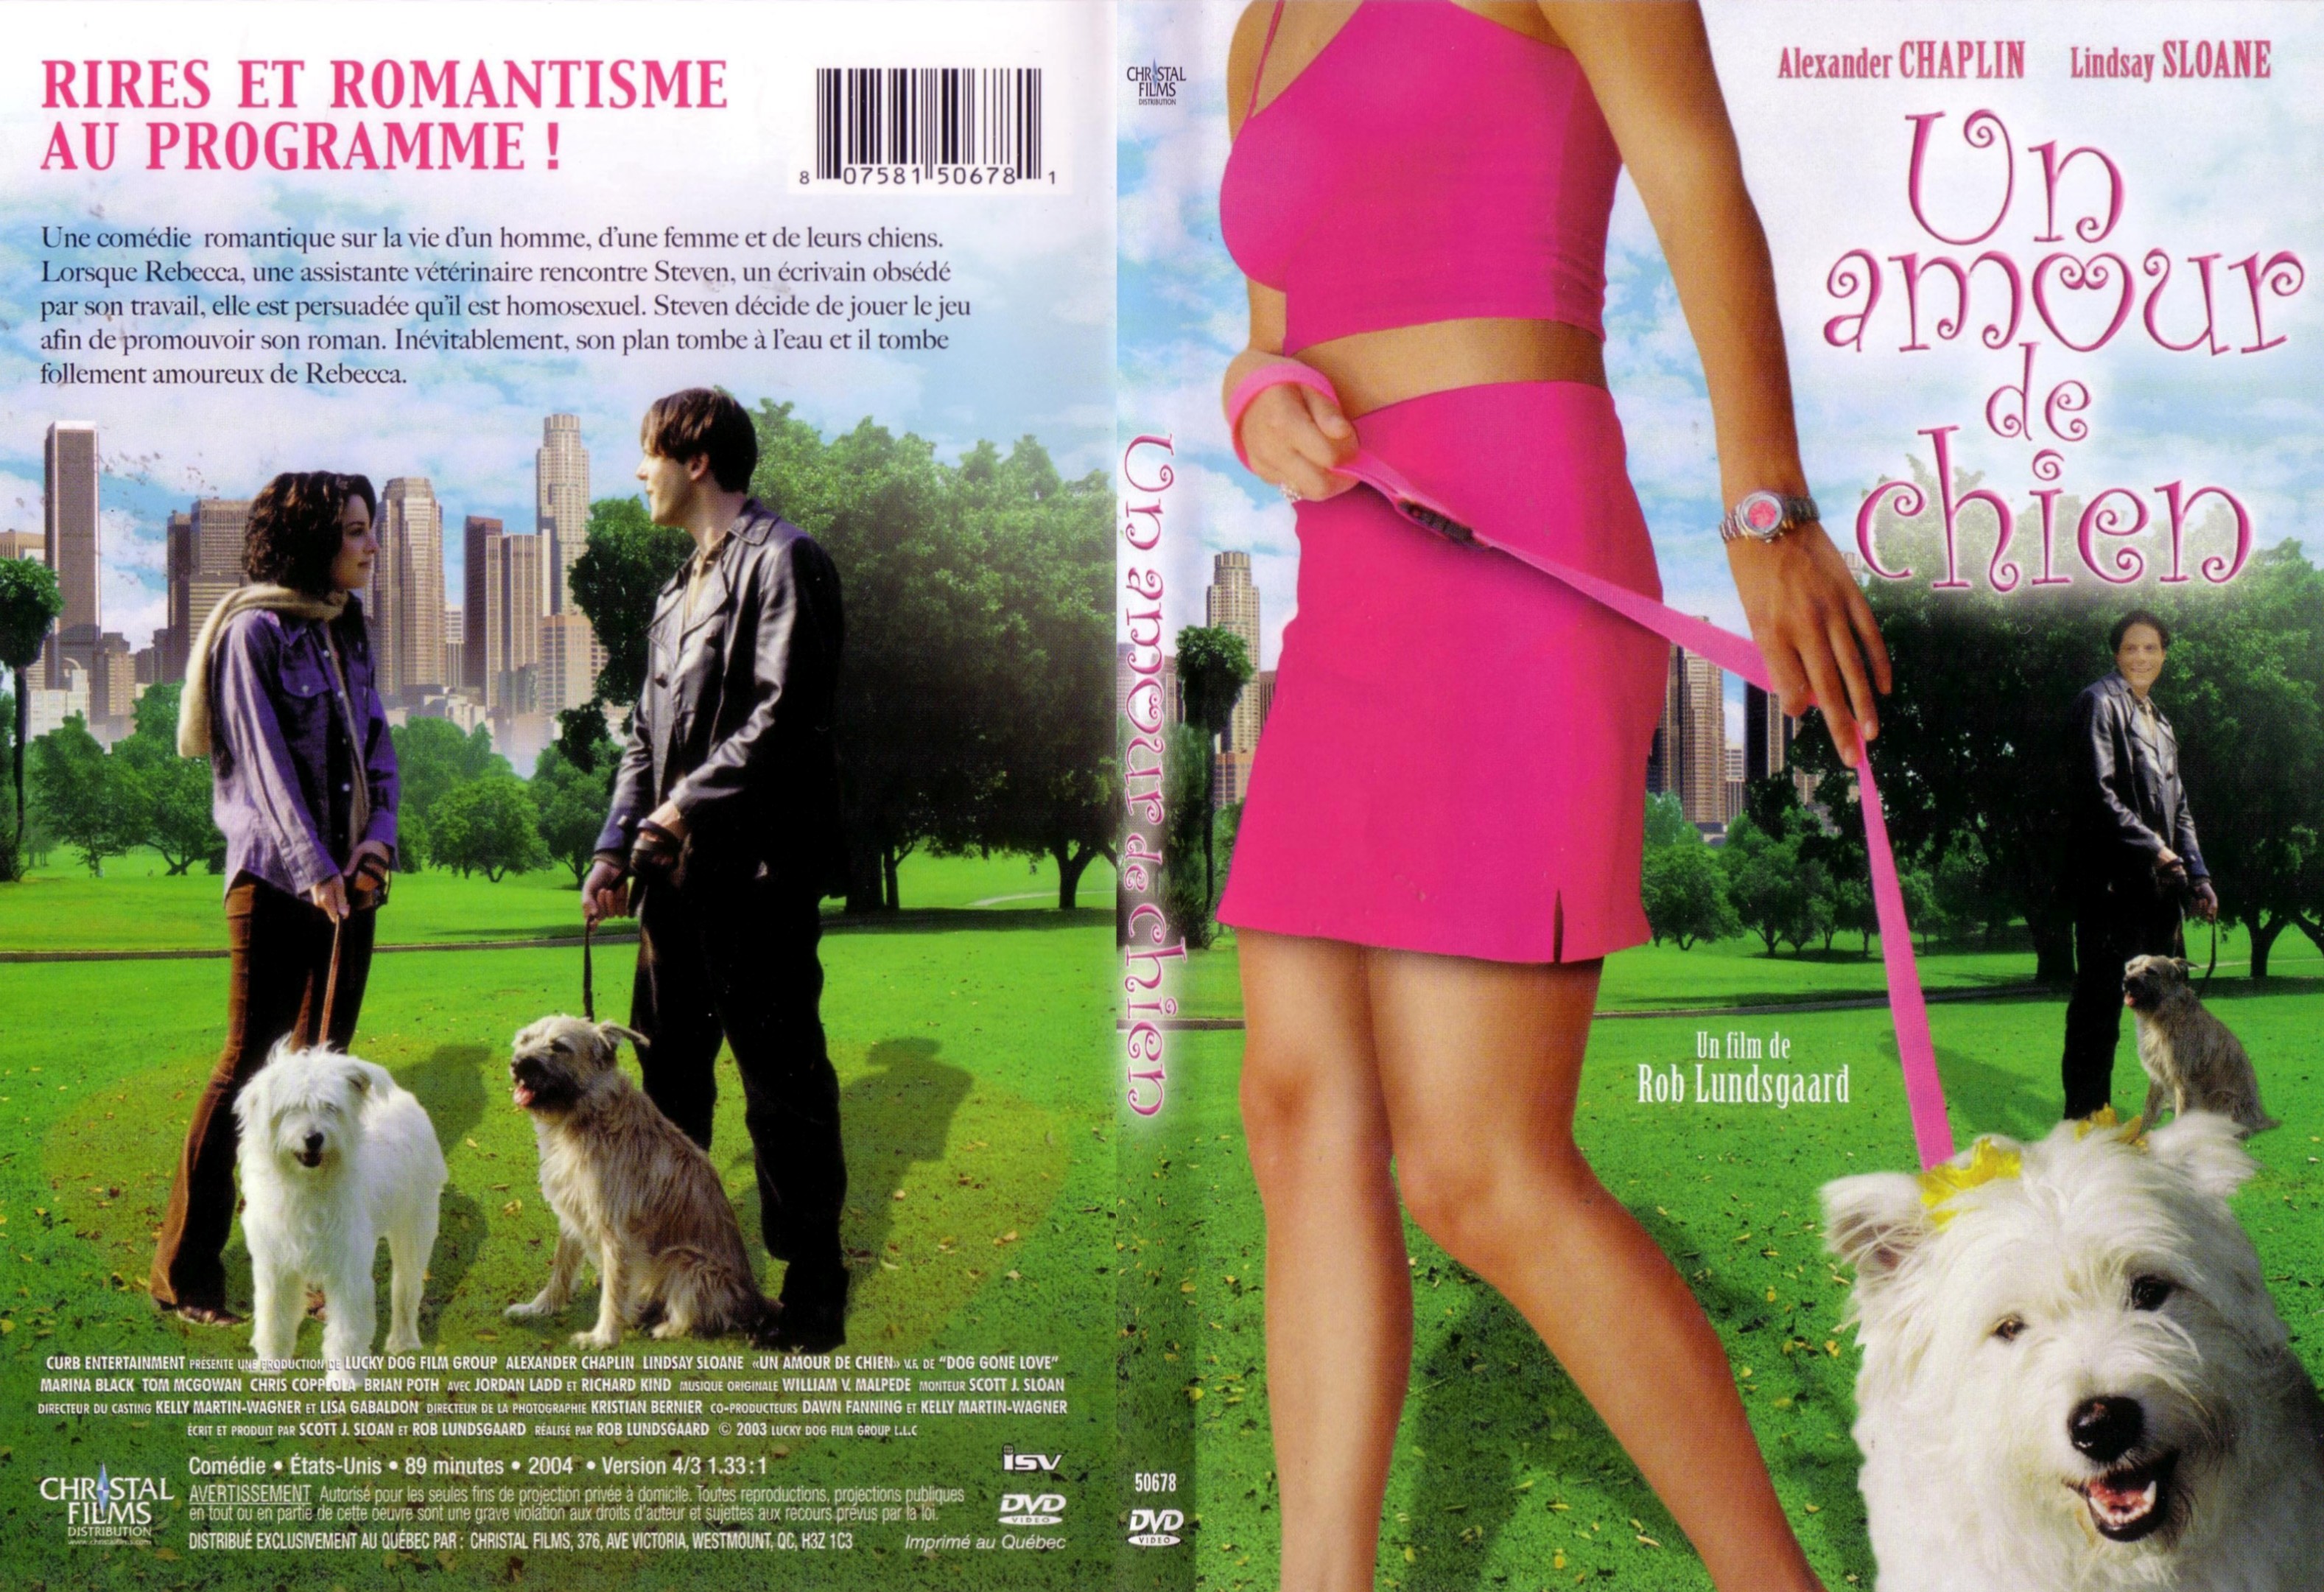 Jaquette Dvd De Un Amour De Chien 2003 Slim Cinéma Passion